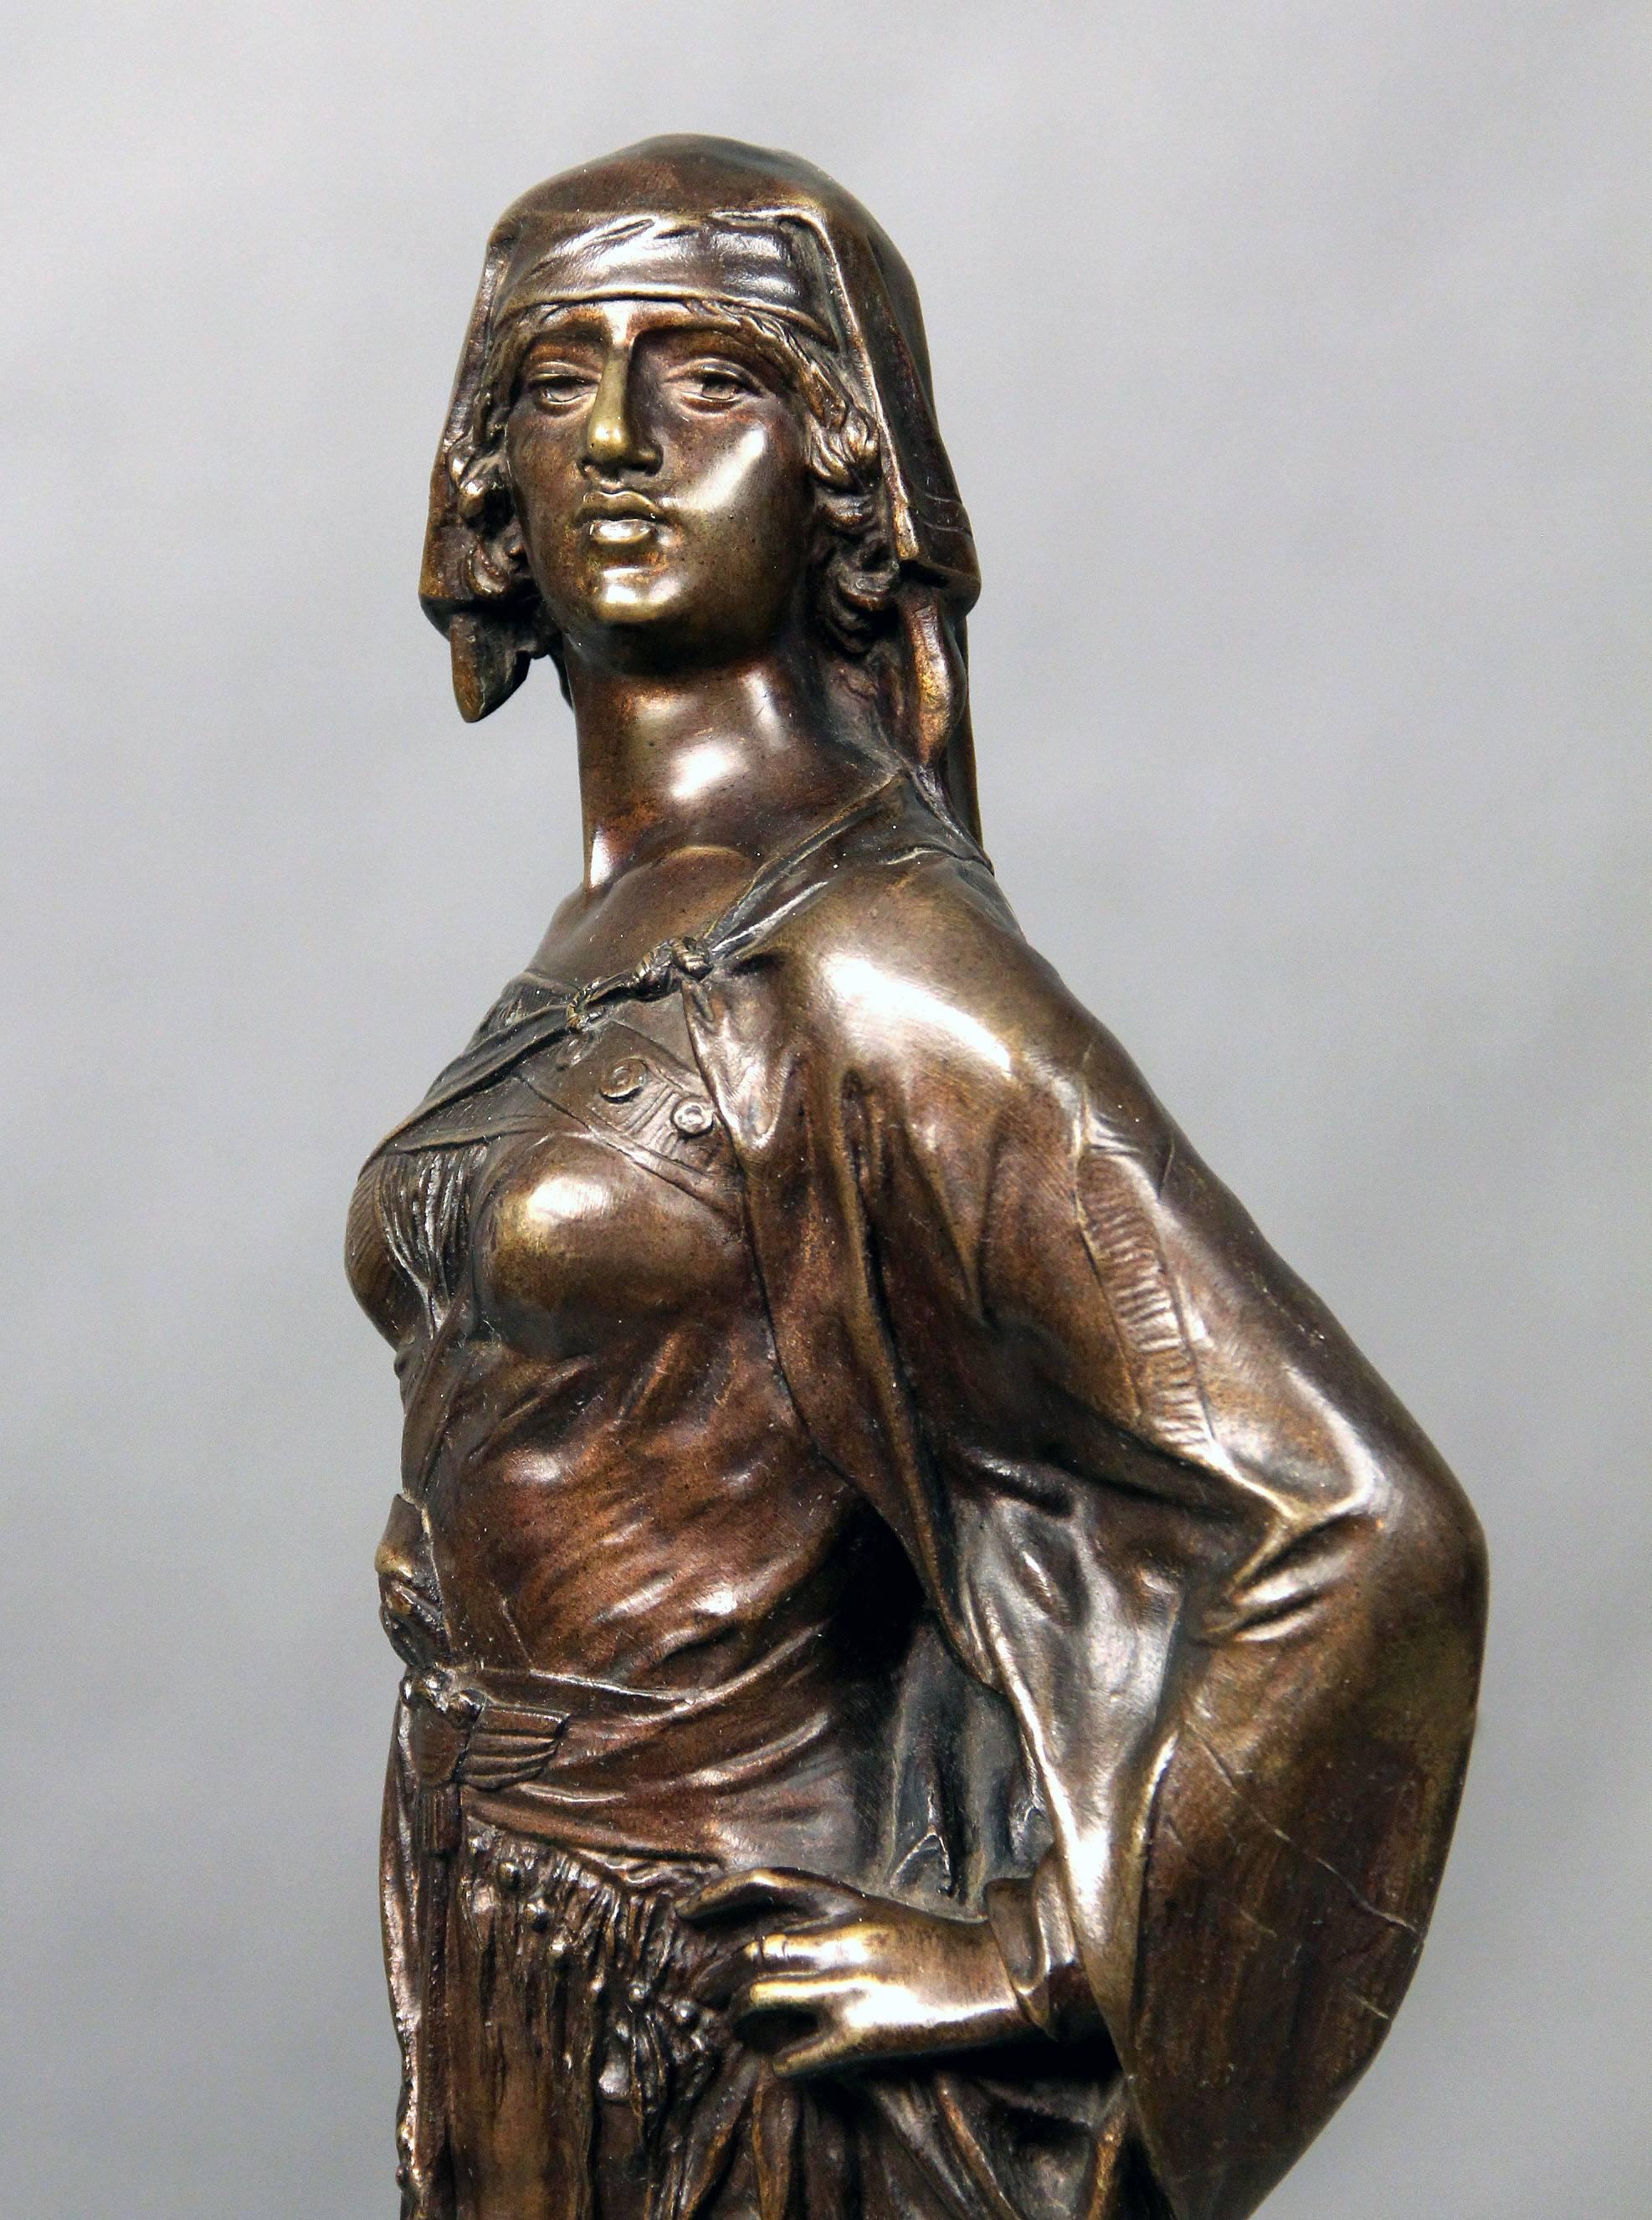 Sculpture en bronze de la fin du XIXe siècle représentant une femme guerrière avec une épée

Signé E Drouot

Edouard Drouot est né à Sommevoire dans la Haut Marne le 3 avril 1859. Au début de sa carrière, Drouot a connu le succès en tant que